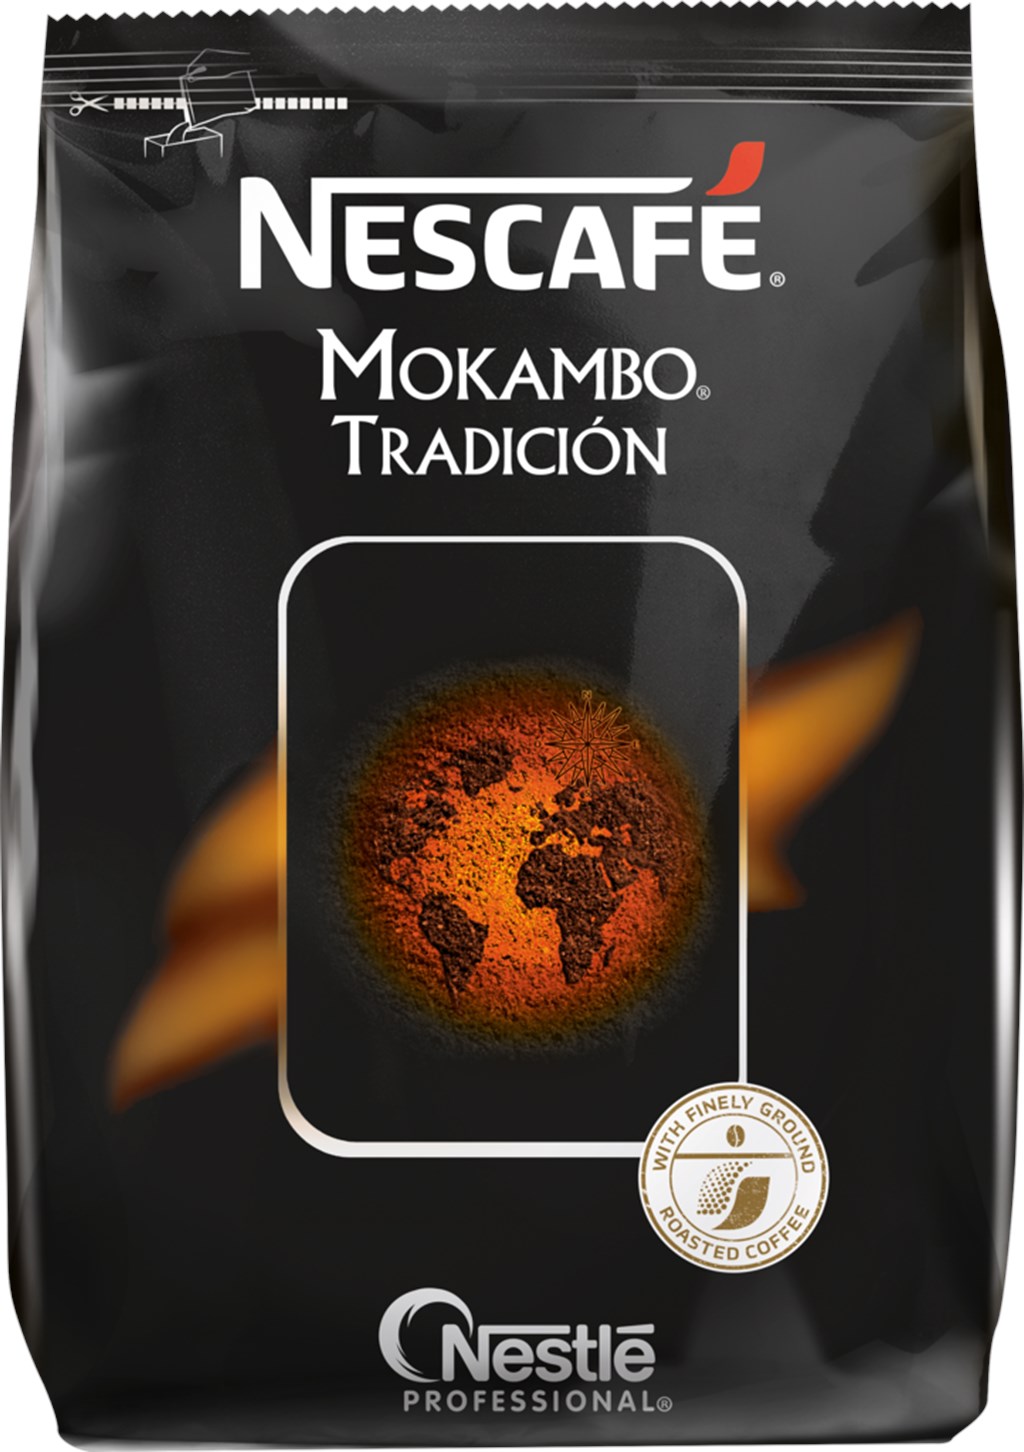 фото Кофе nescafe mokambo tradicion растворимый с добавлением жареного молотого кофе 500 г